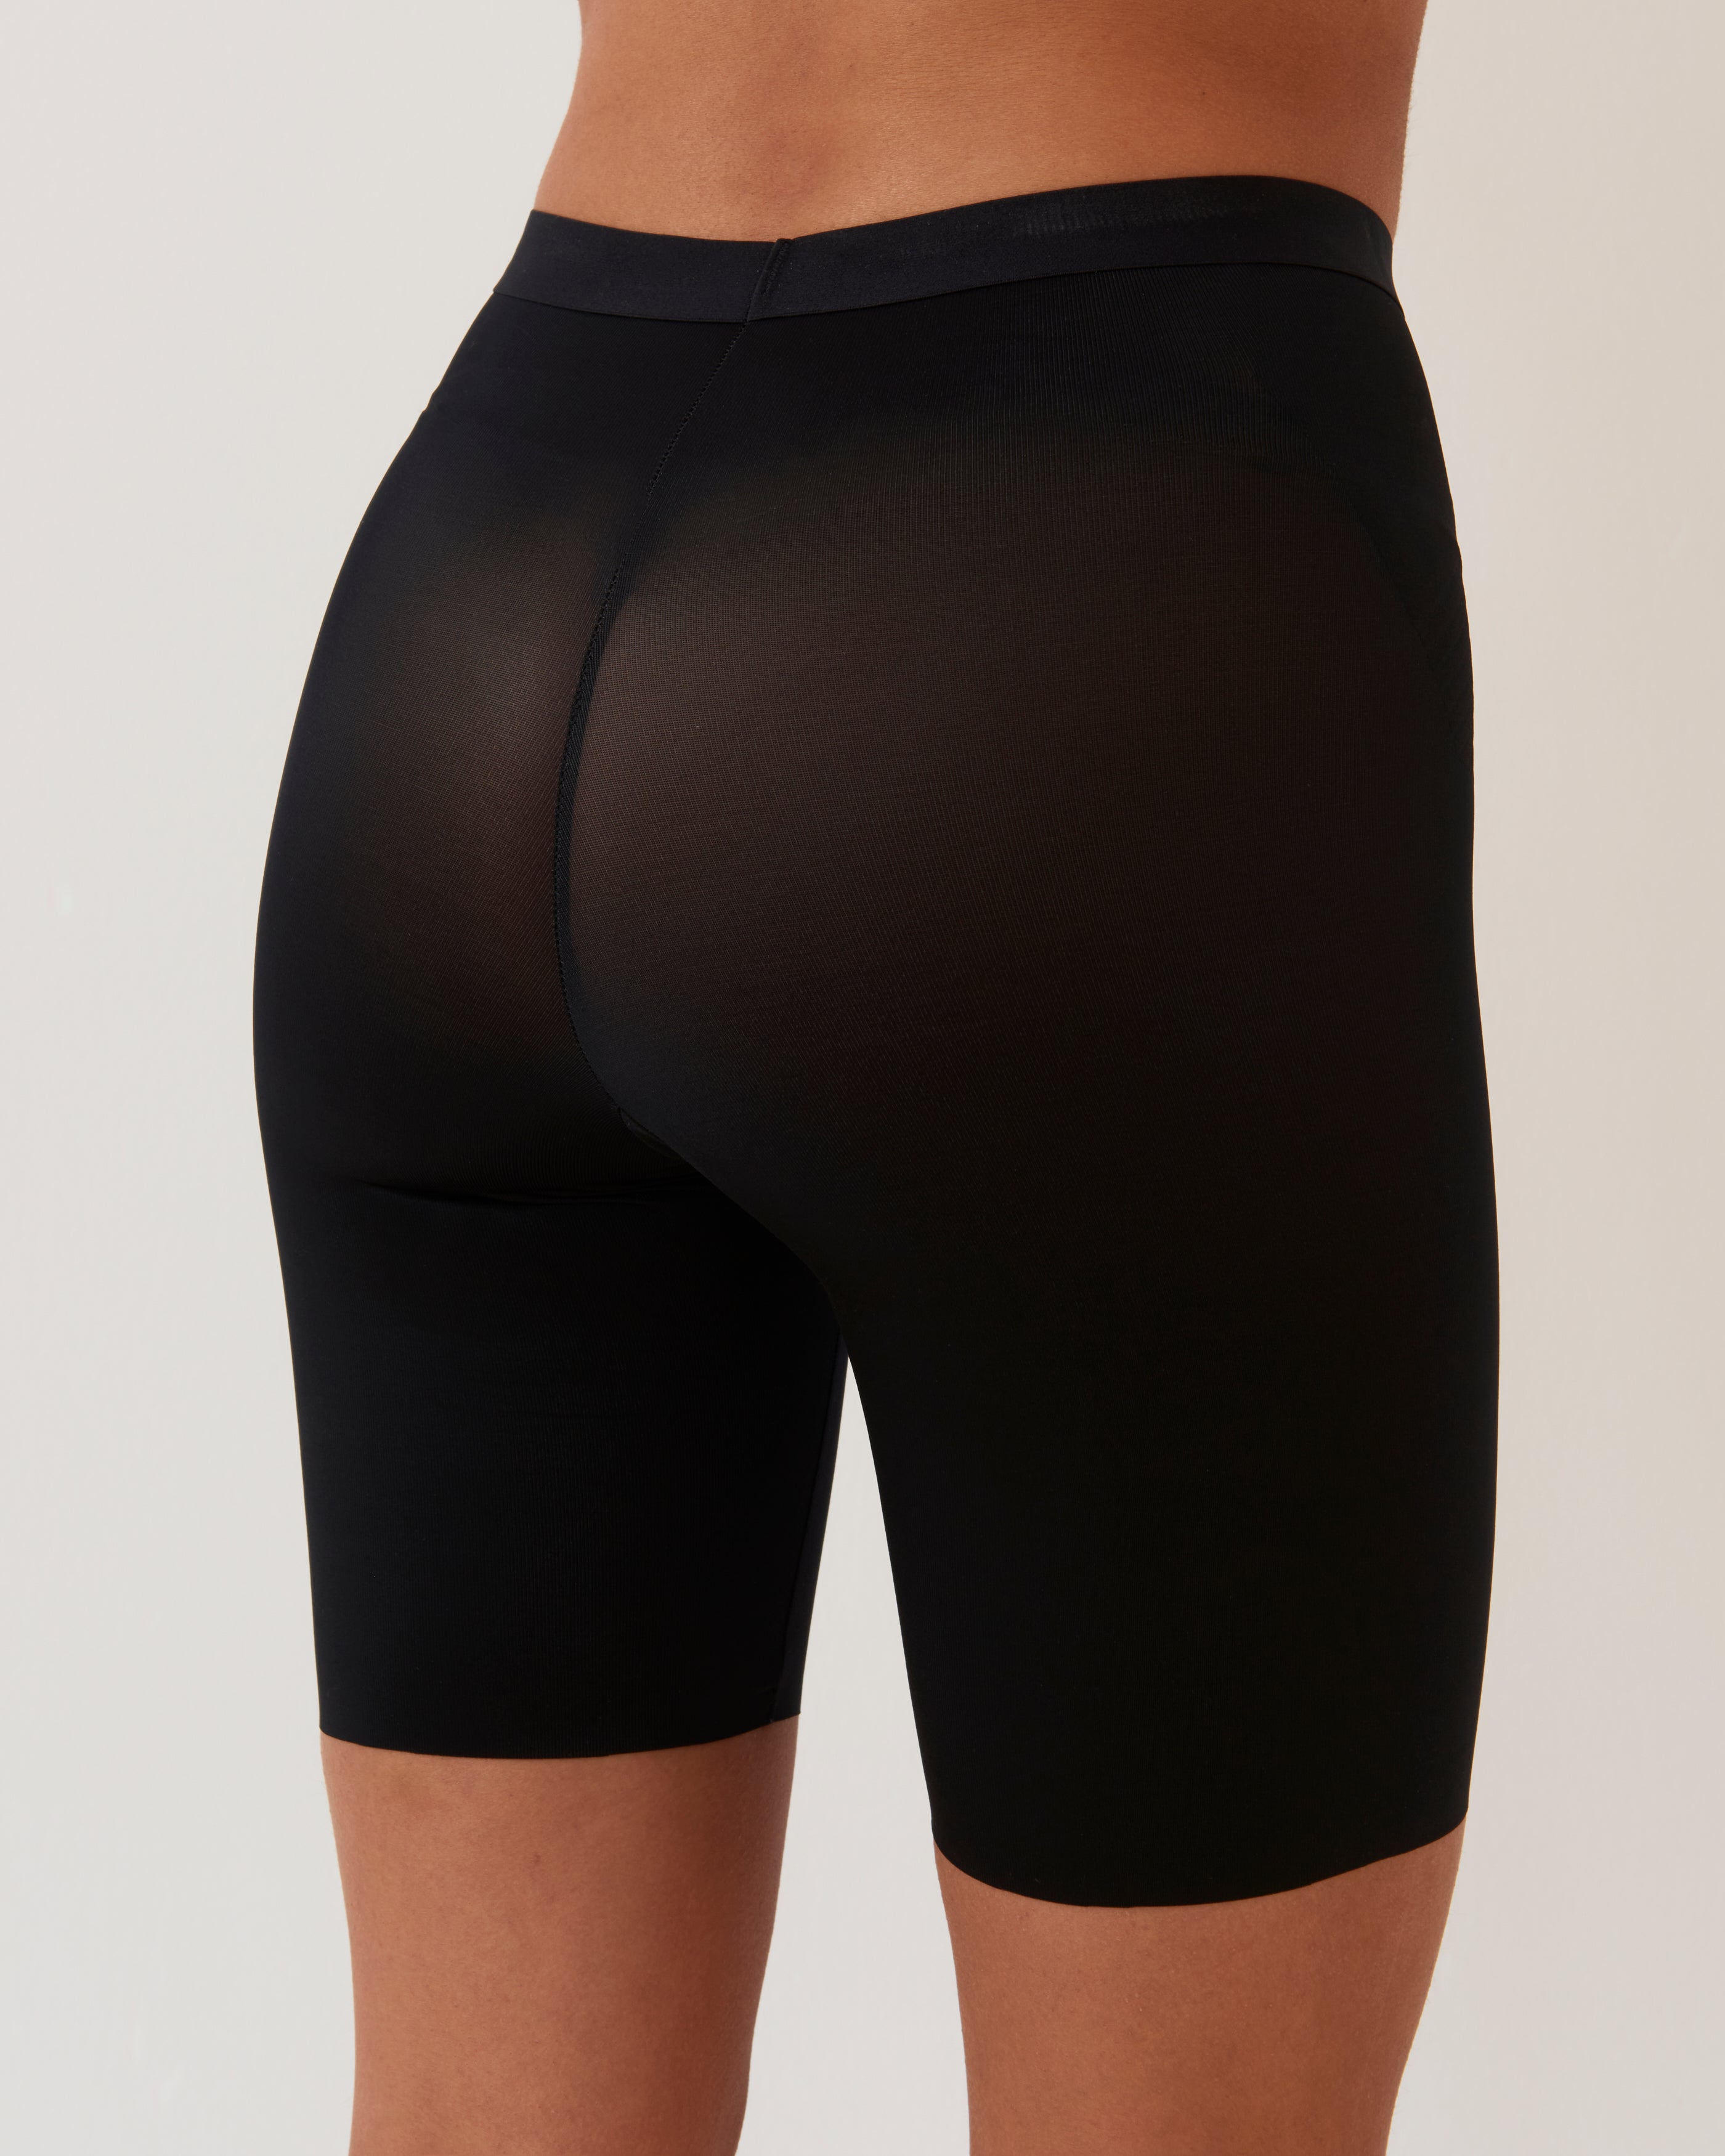 Black Slimming Pants by SPANX